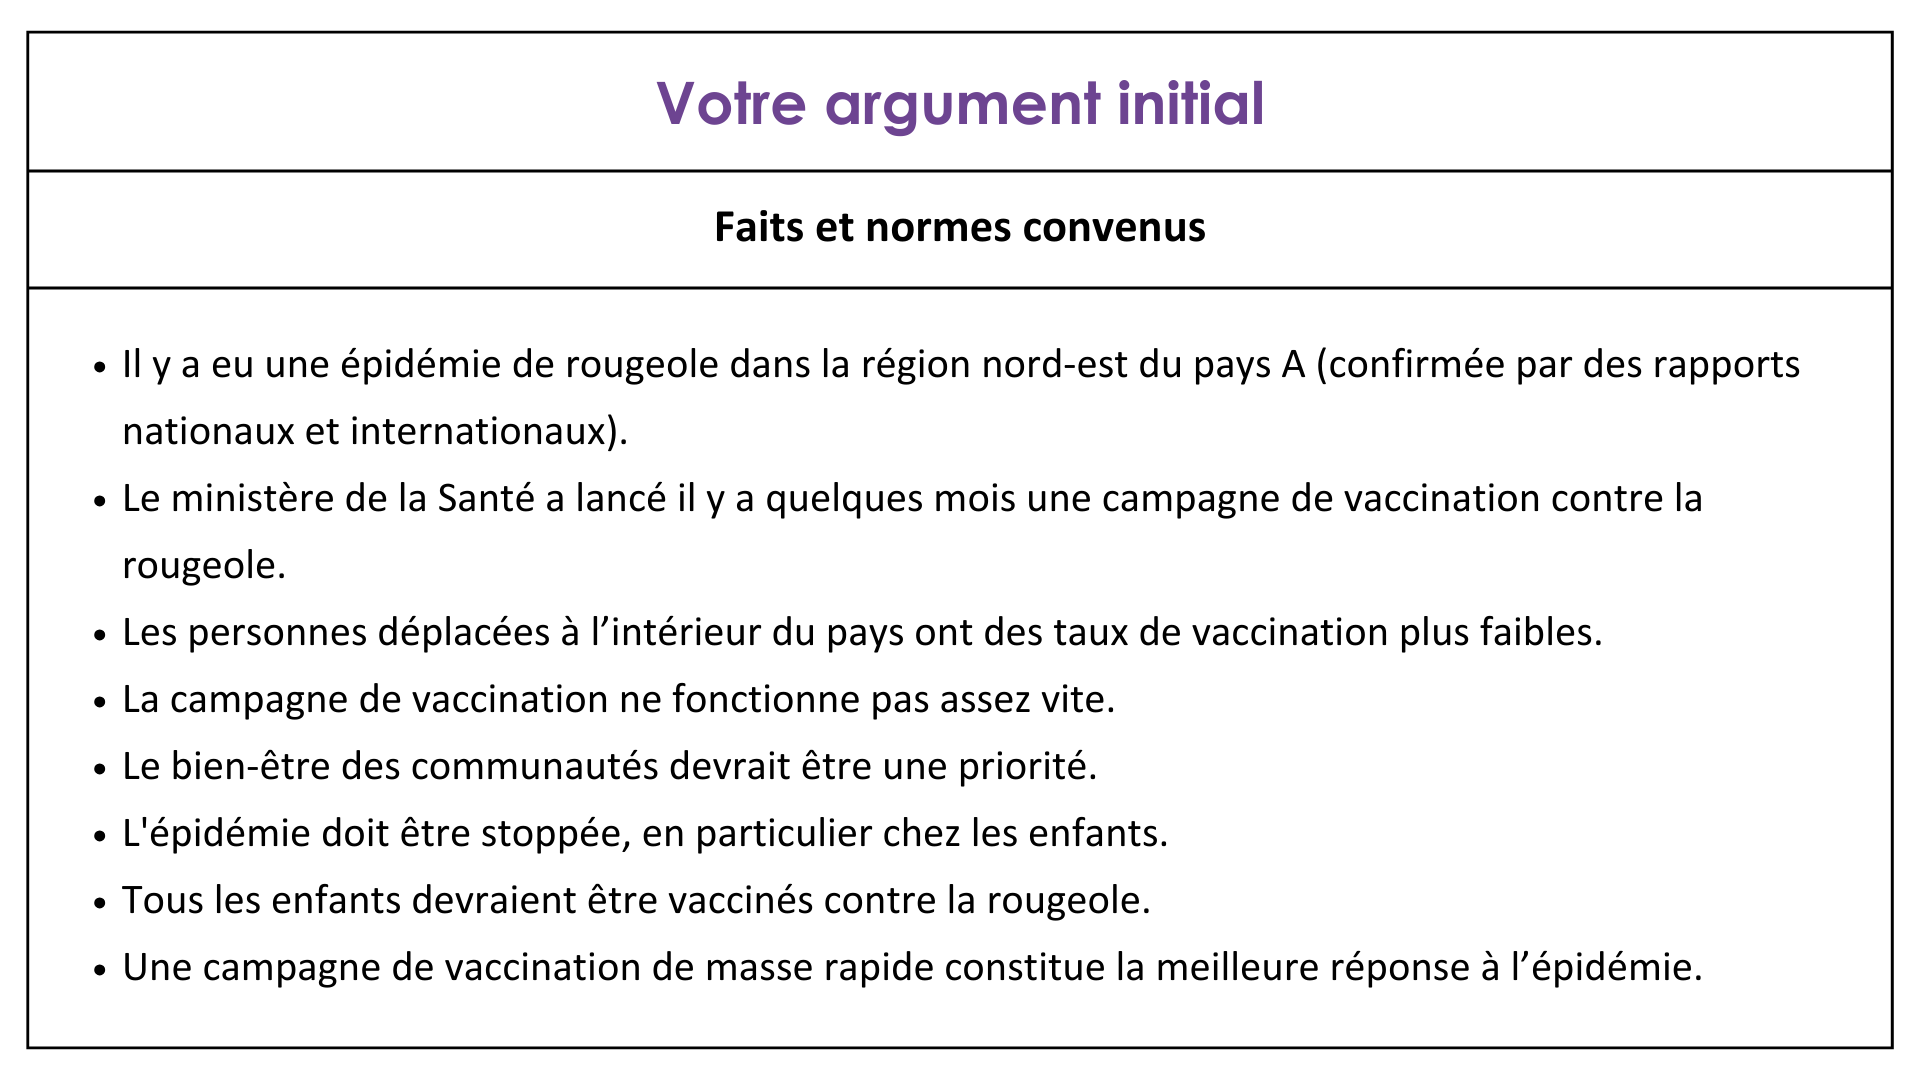 Commencez votre négociation par un argumentaire axé sur les faits et les normes convenus telles que le fait que la campagne de vaccination ne fonctionne pas assez vite et que le bien-être des communautés devrait être une priorité.